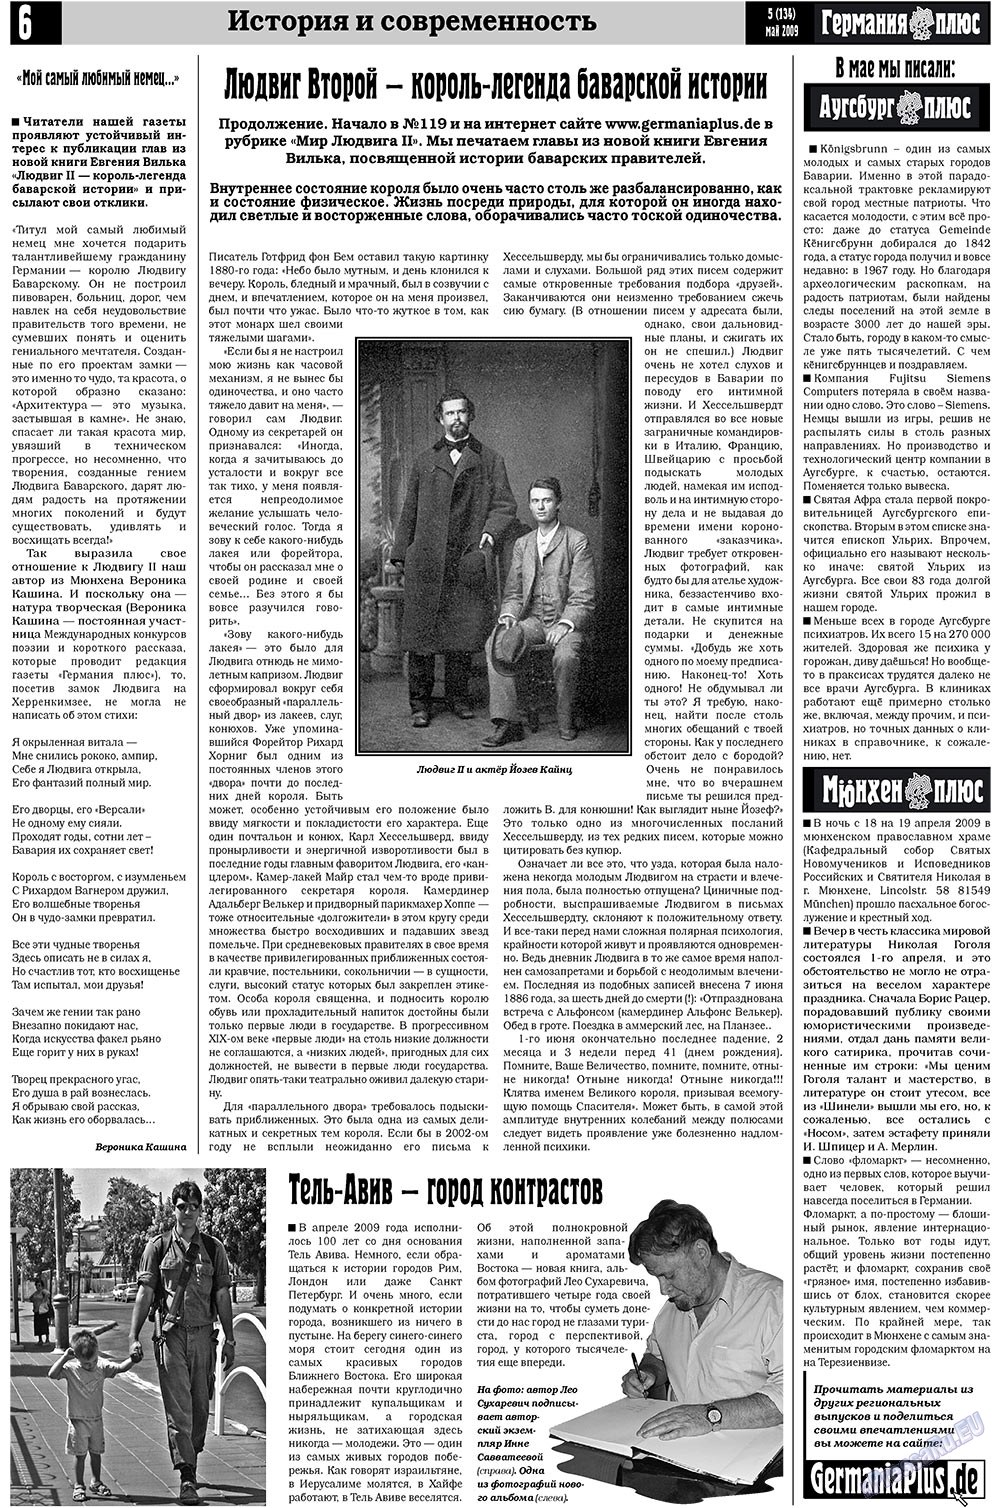 Германия плюс, газета. 2009 №5 стр.6